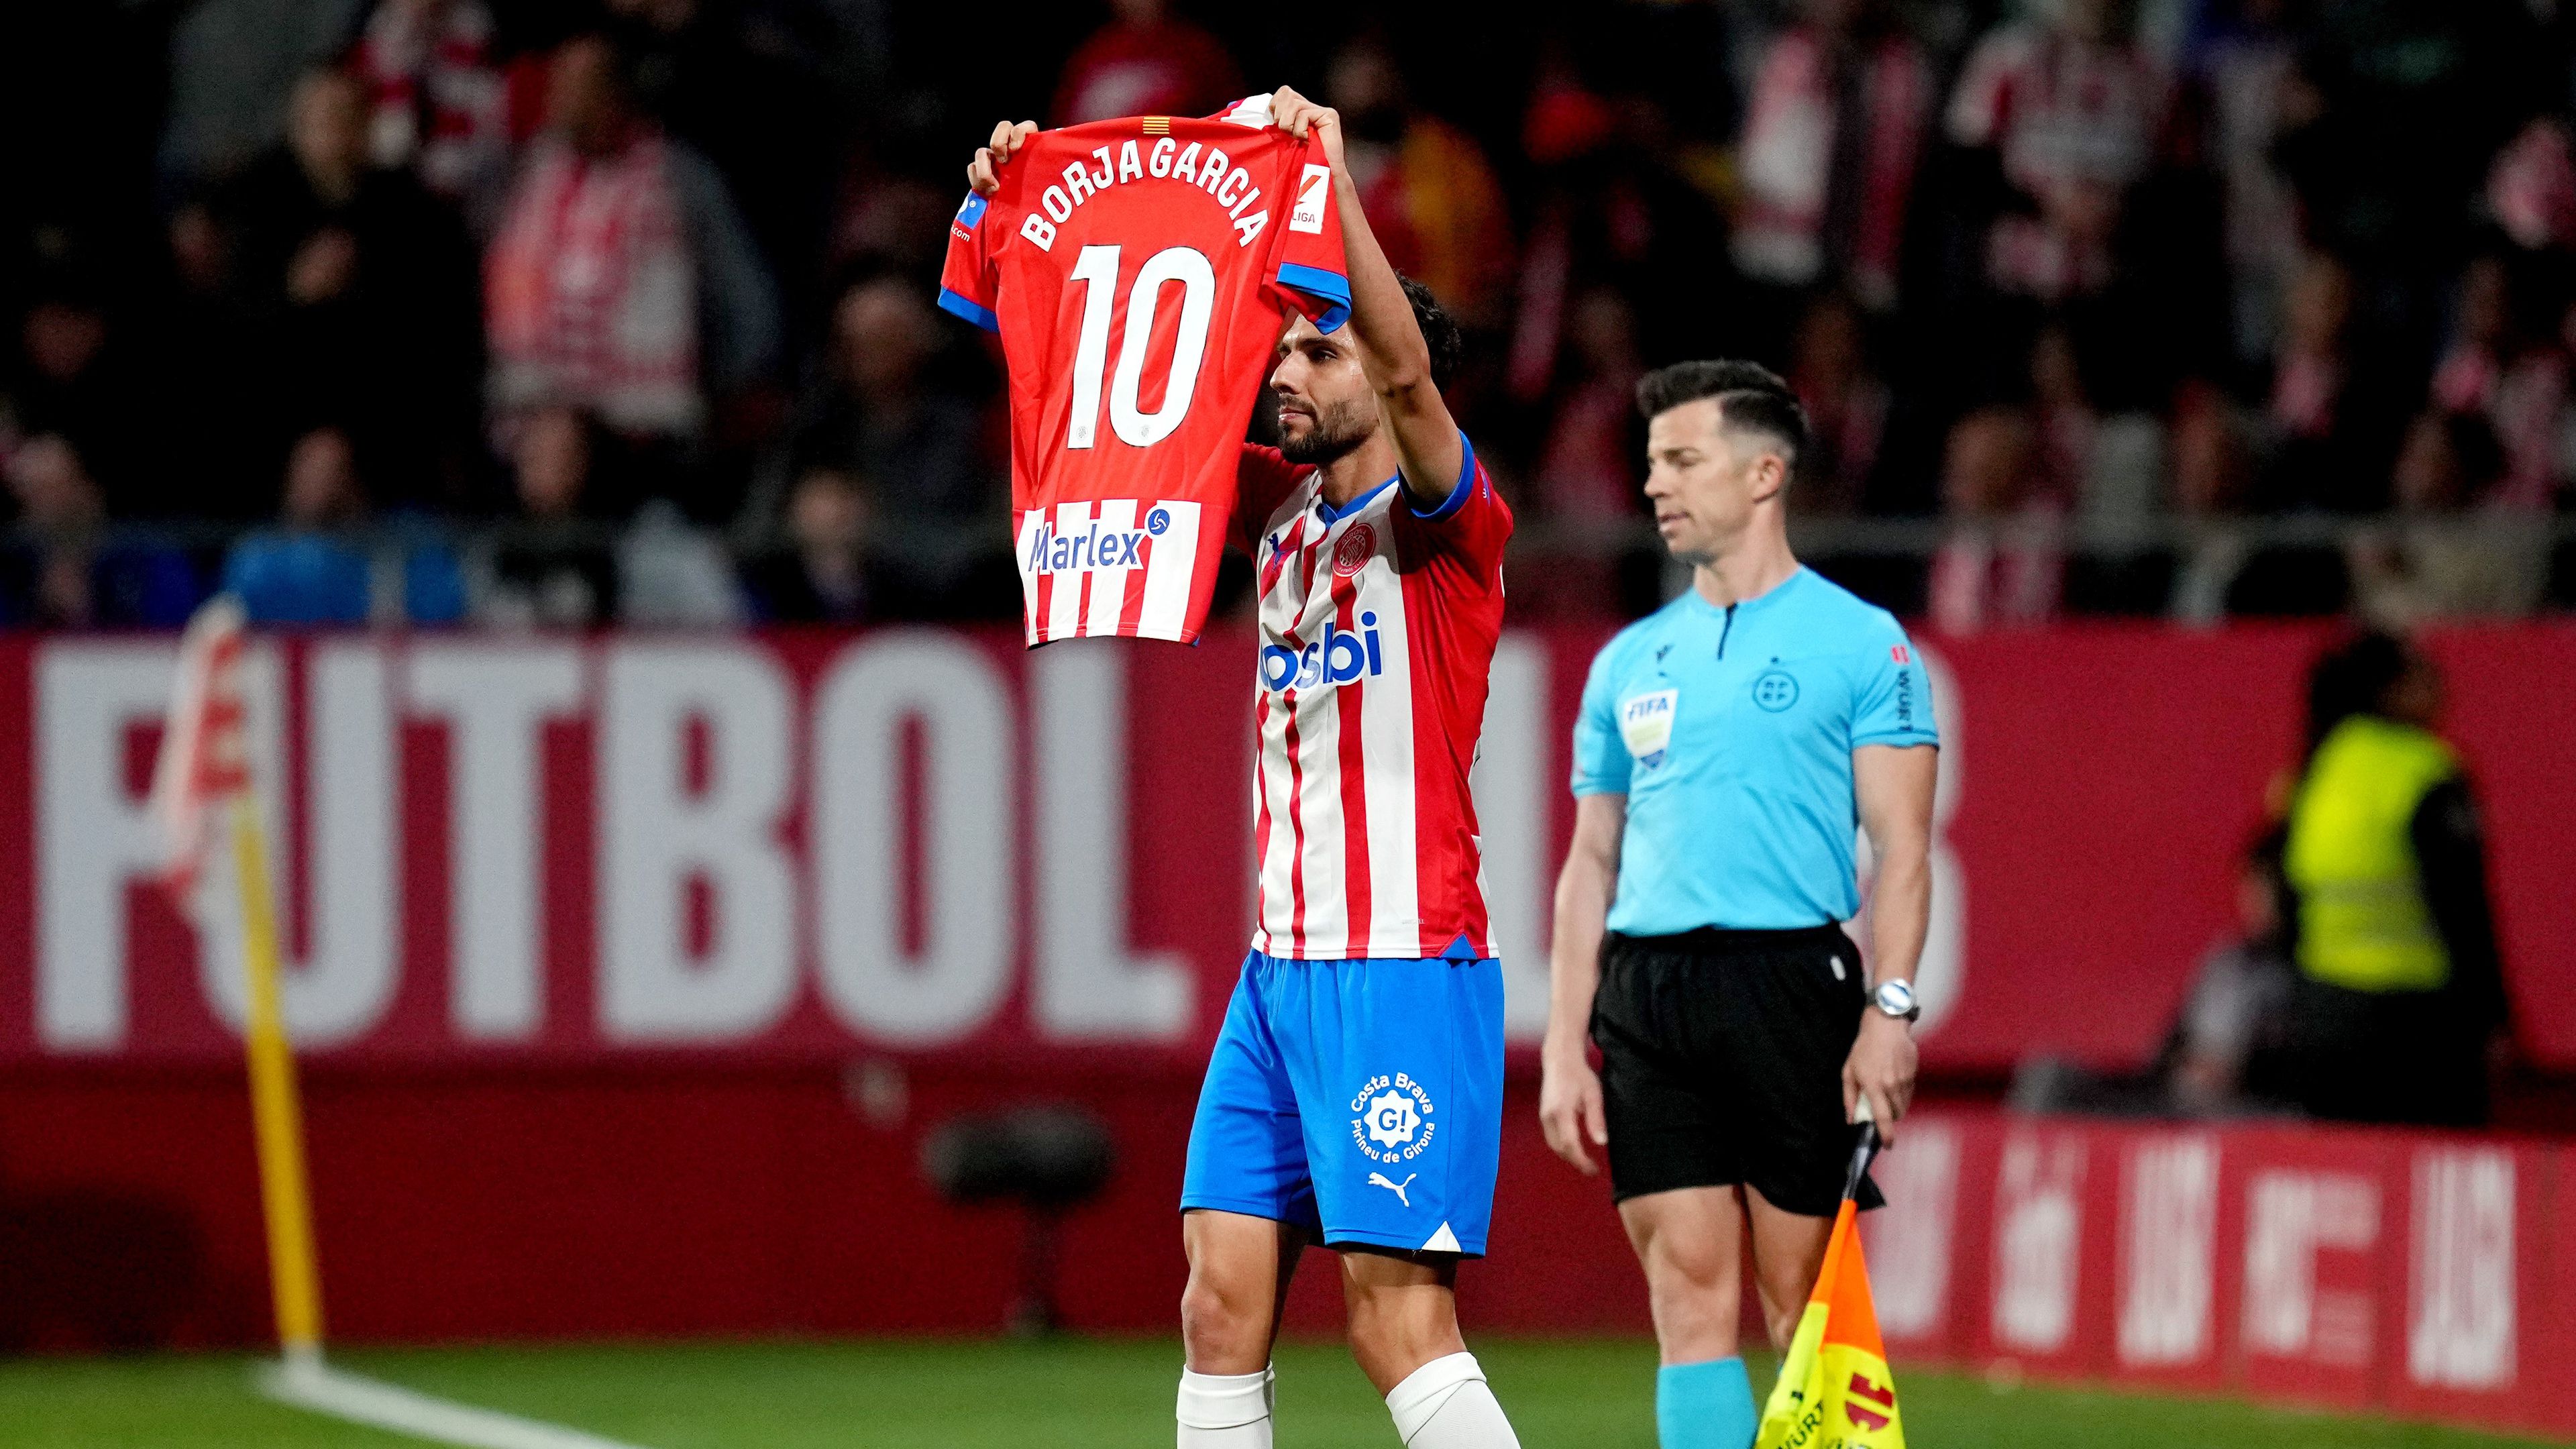 Iván Martín szerezte a mérkőzés második gólját, ünneplése alatt pedig sérült csapattársa, Borja García mezét tartotta a magasba.